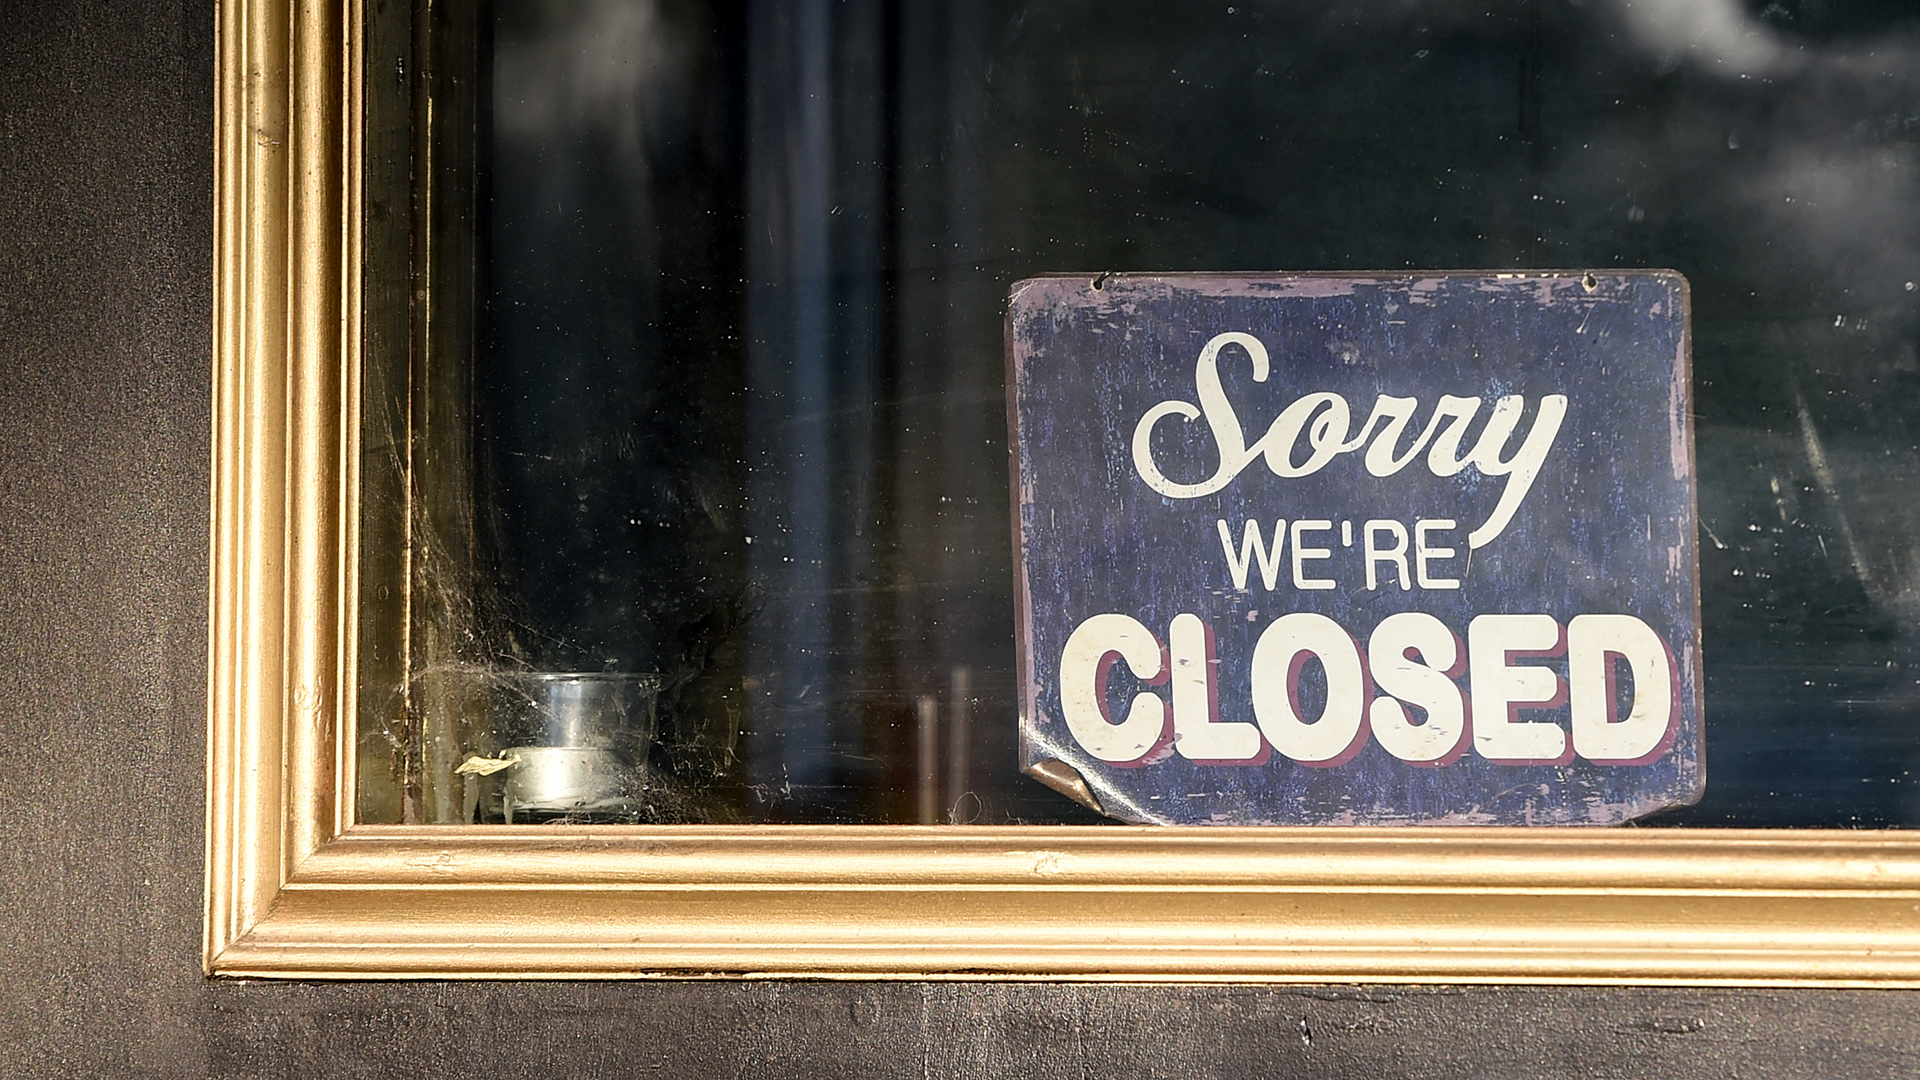 An der Tür eines geschlossenen Restaurants hängt ein Schild mit der Aufschrift "Sorry we're closed" | dpa